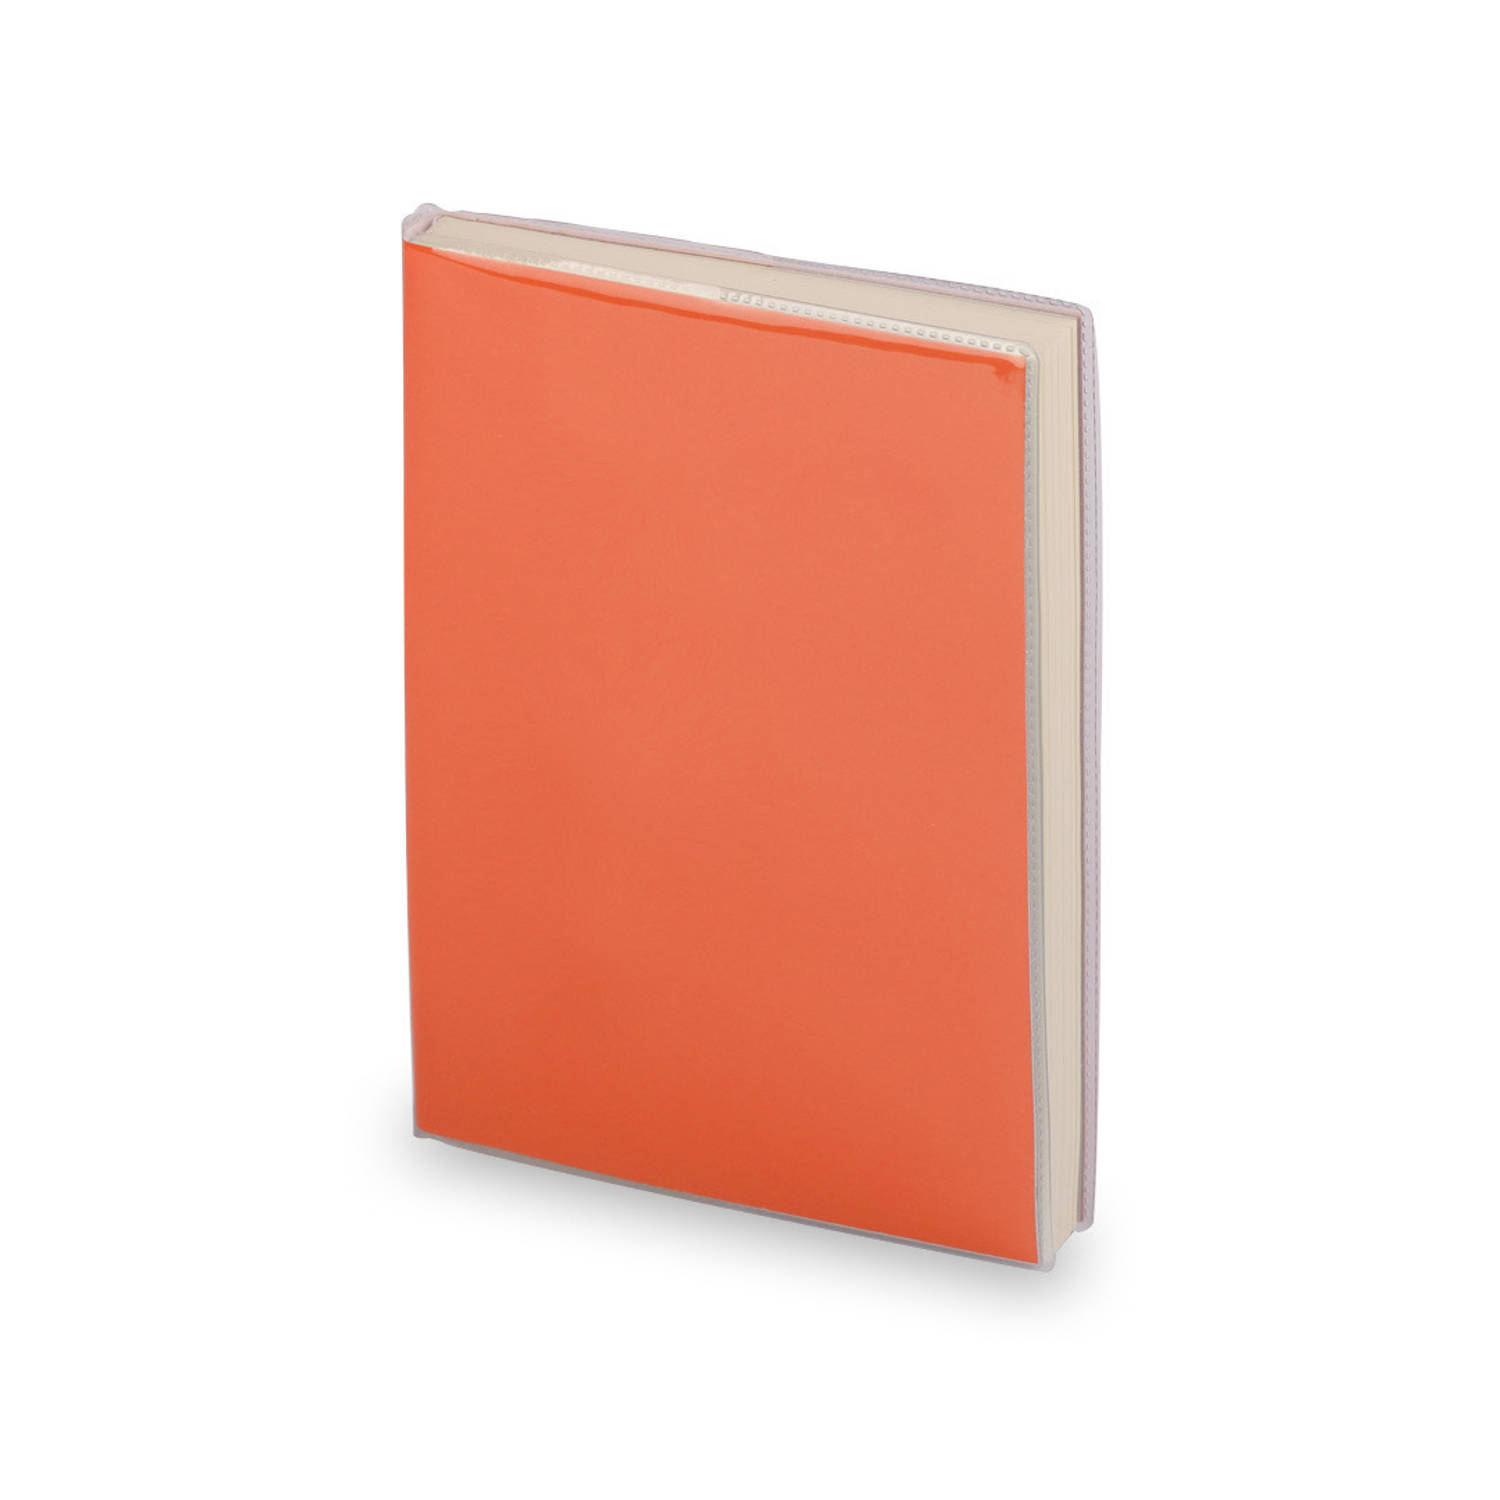 Notitieblokje zachte kaft oranje met plastic hoes 10 x 13 cm Notitieboek